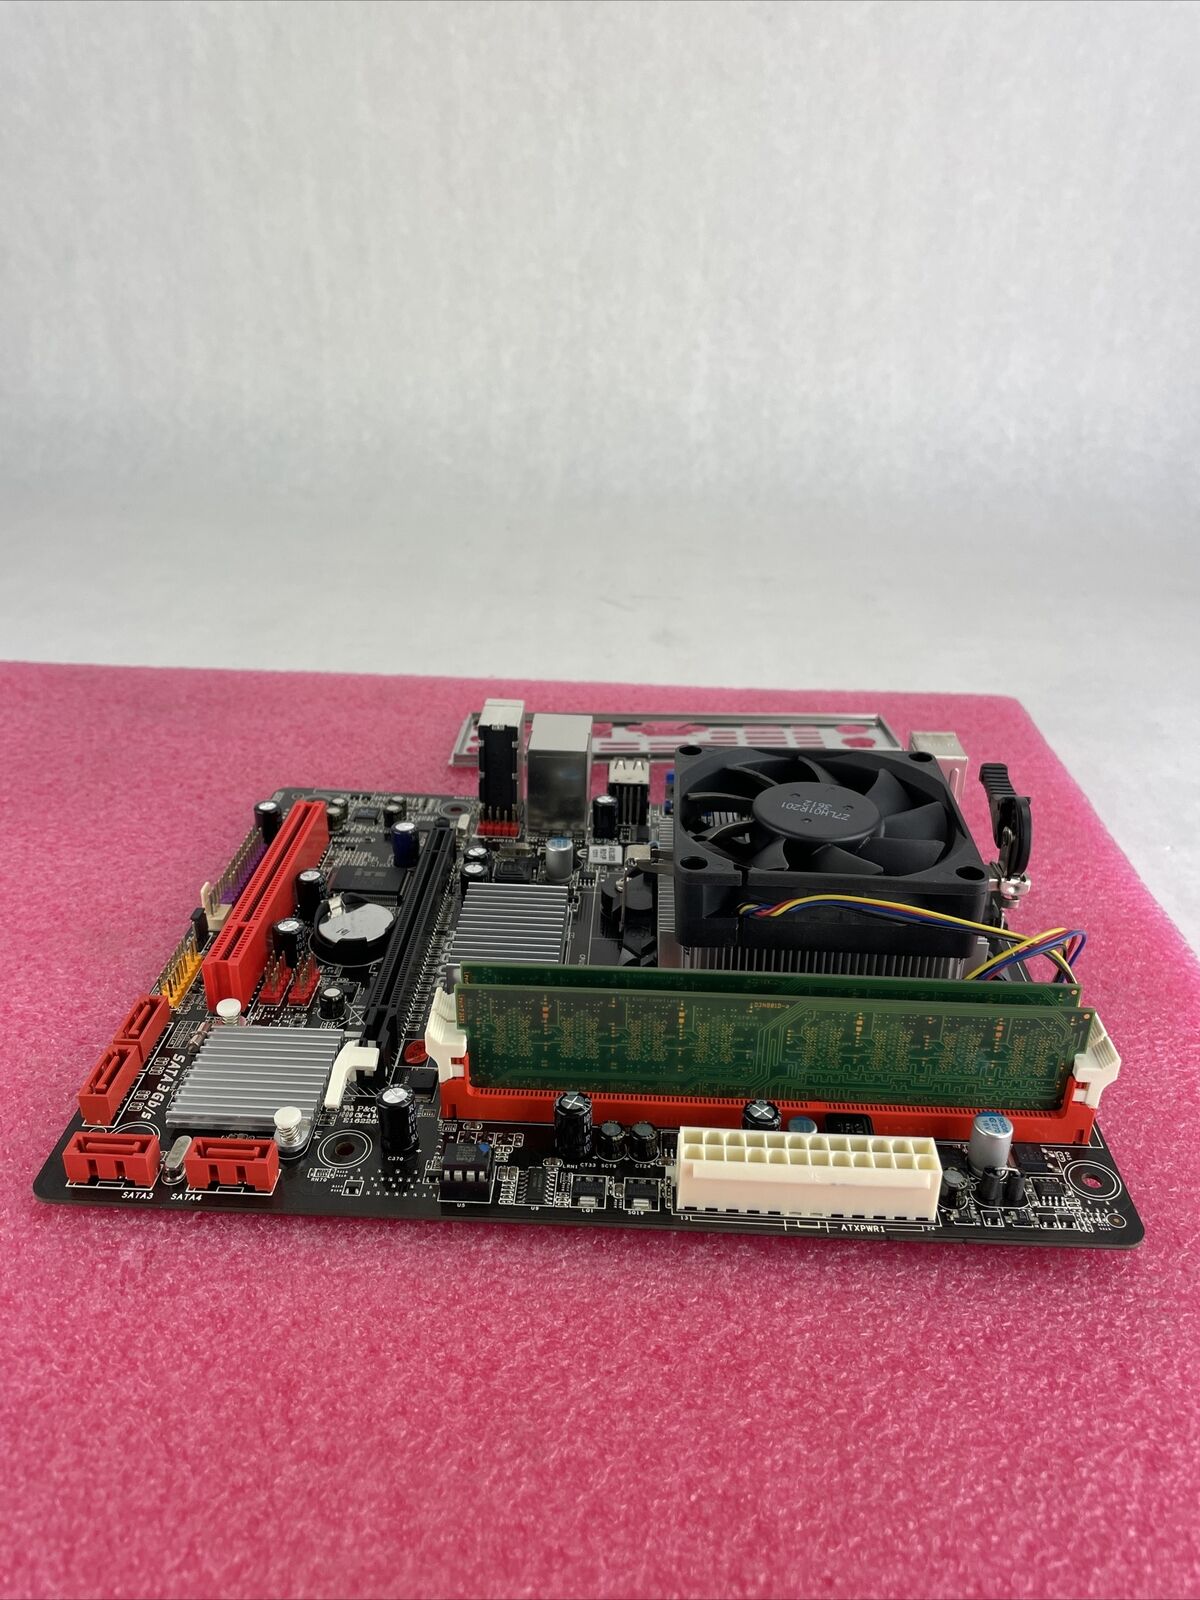 Biostar A960G+ Motherboard AMD Athlon II x2 270 3.4GHz 8GB RAM w/Shield